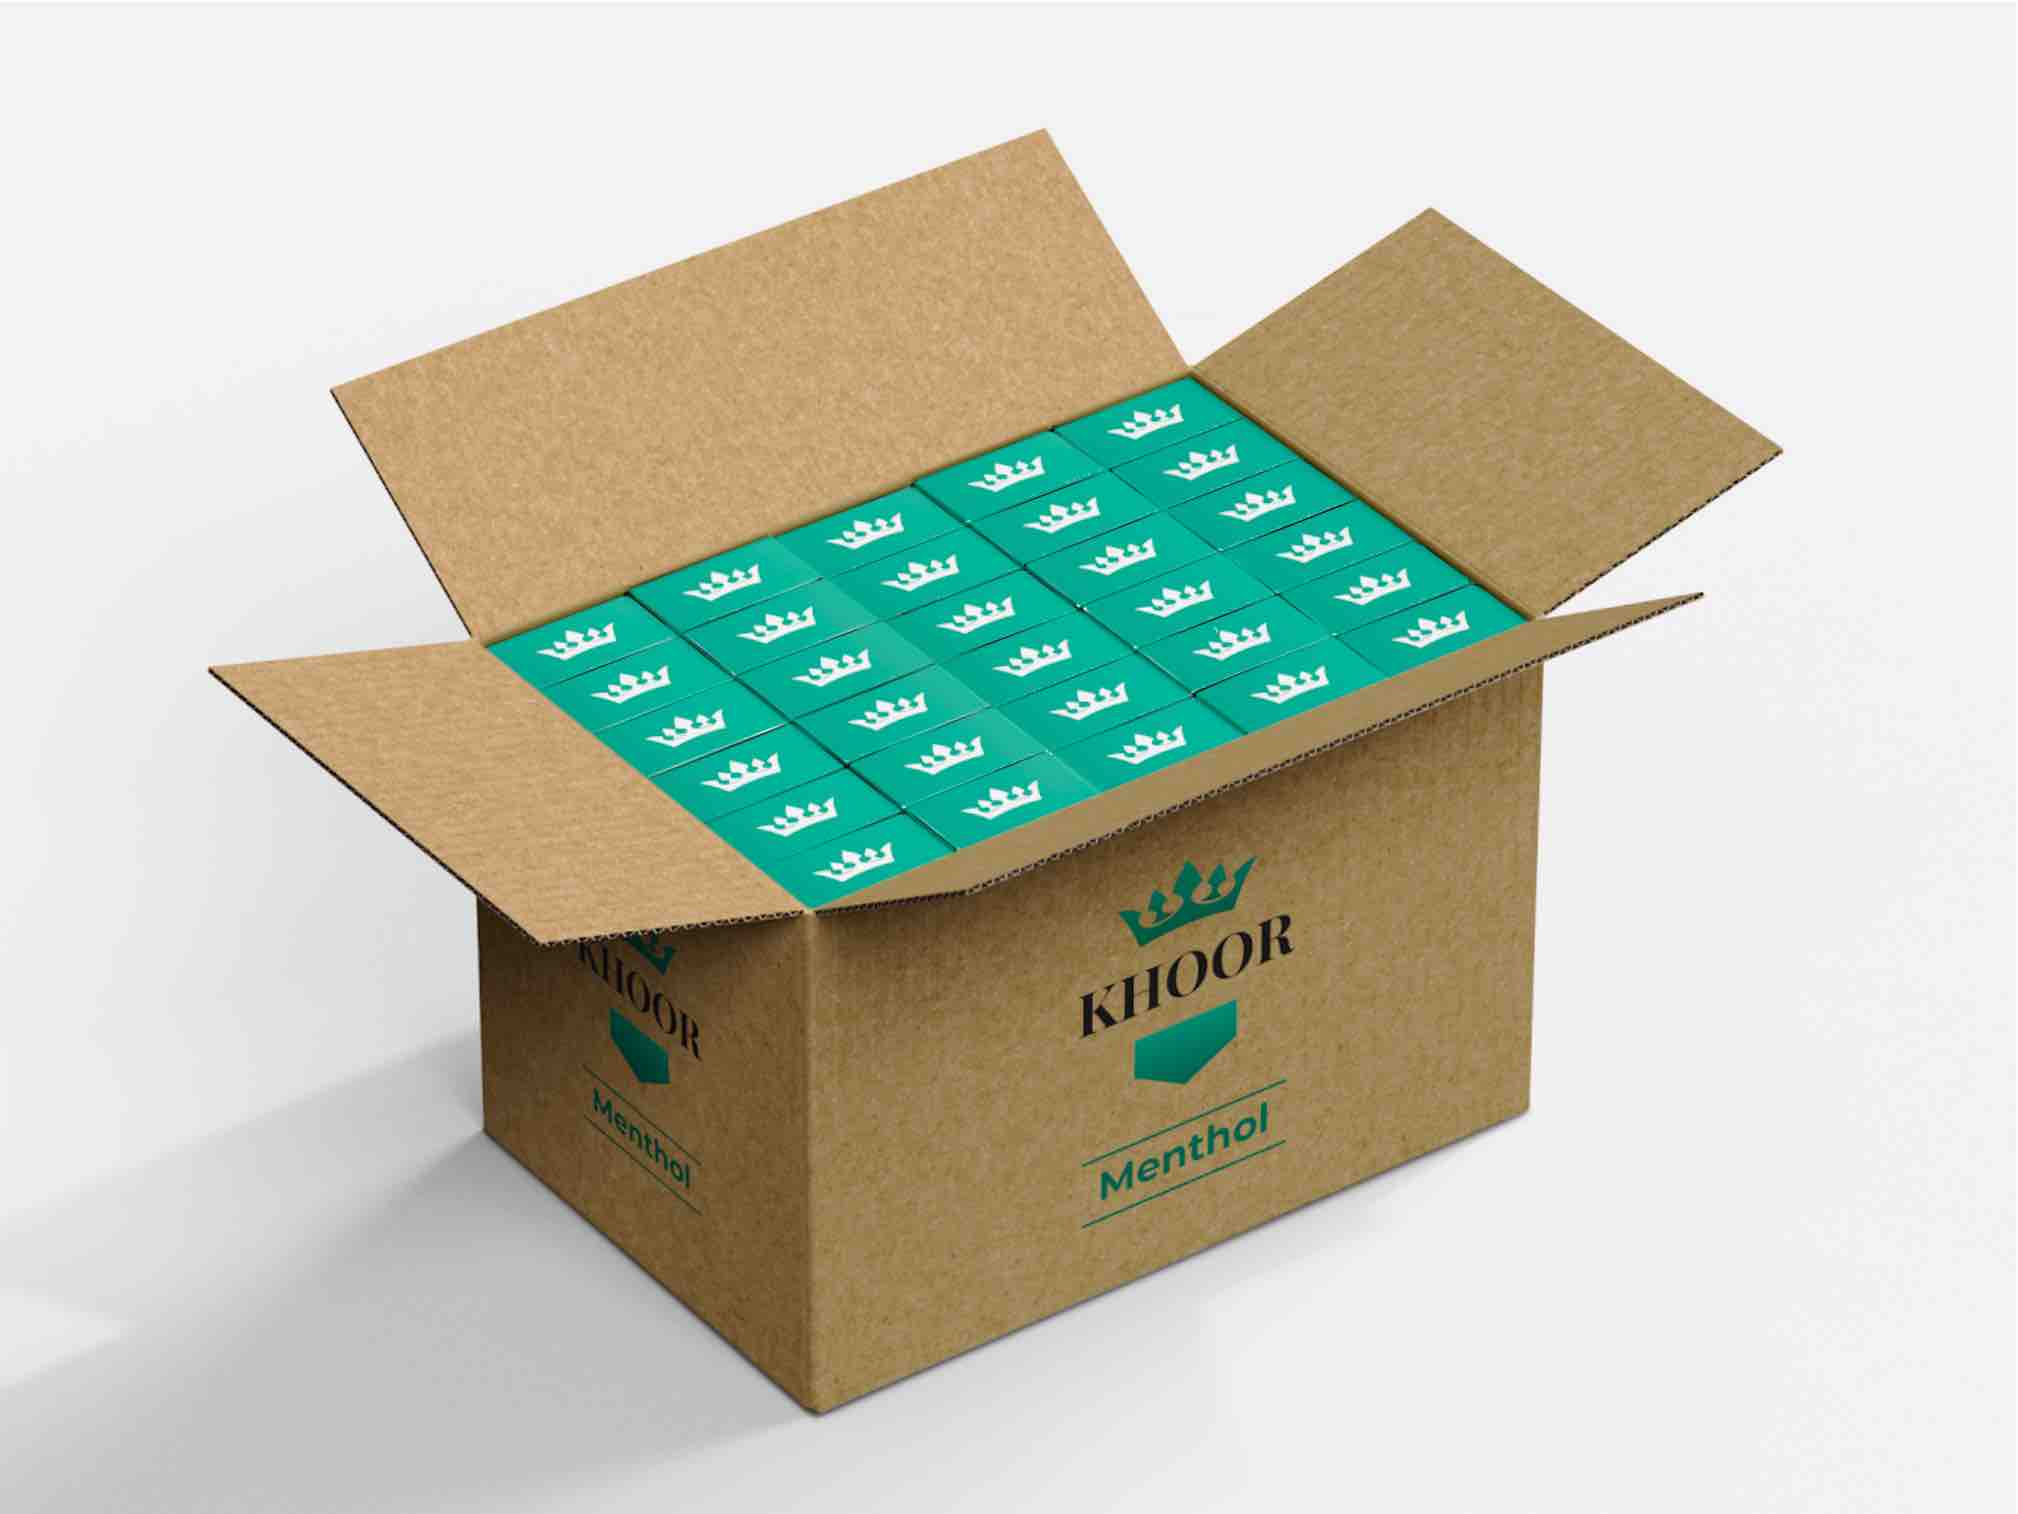 Khoor Menthol Case Box (30 Cartons